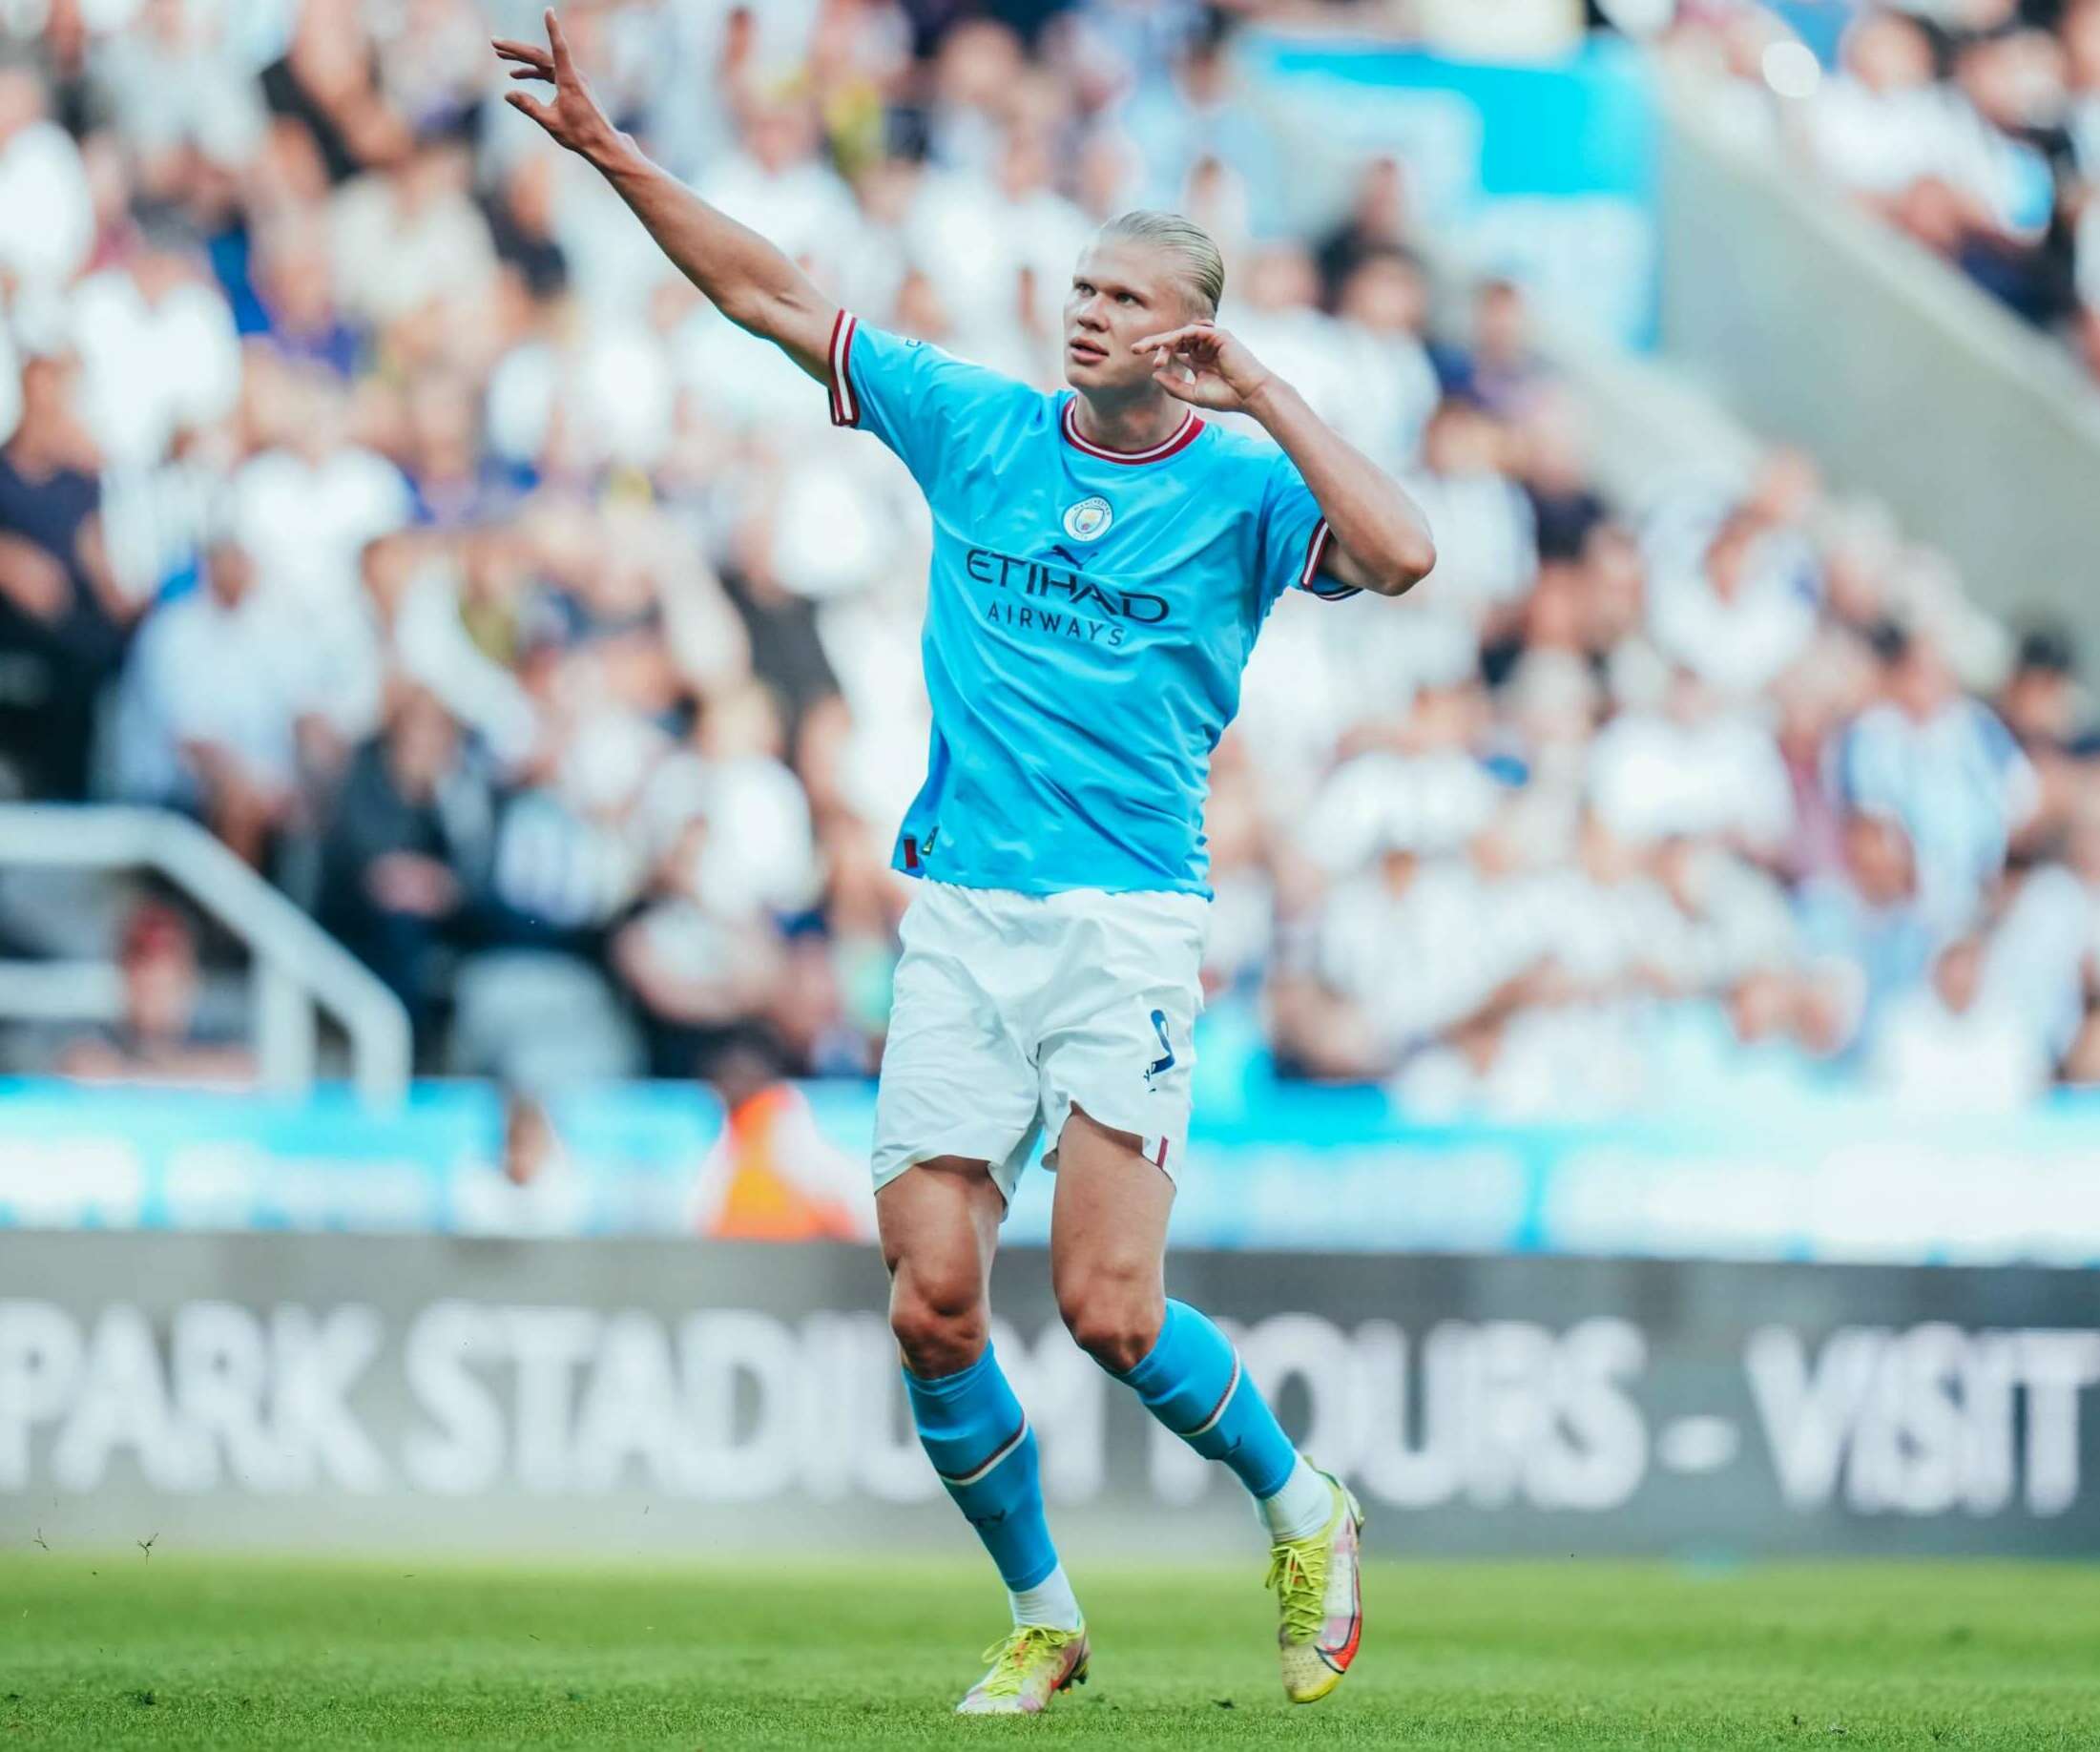 INGLÊS: Manchester City fica no empate com o Newcastle Em jogo de 6 gols